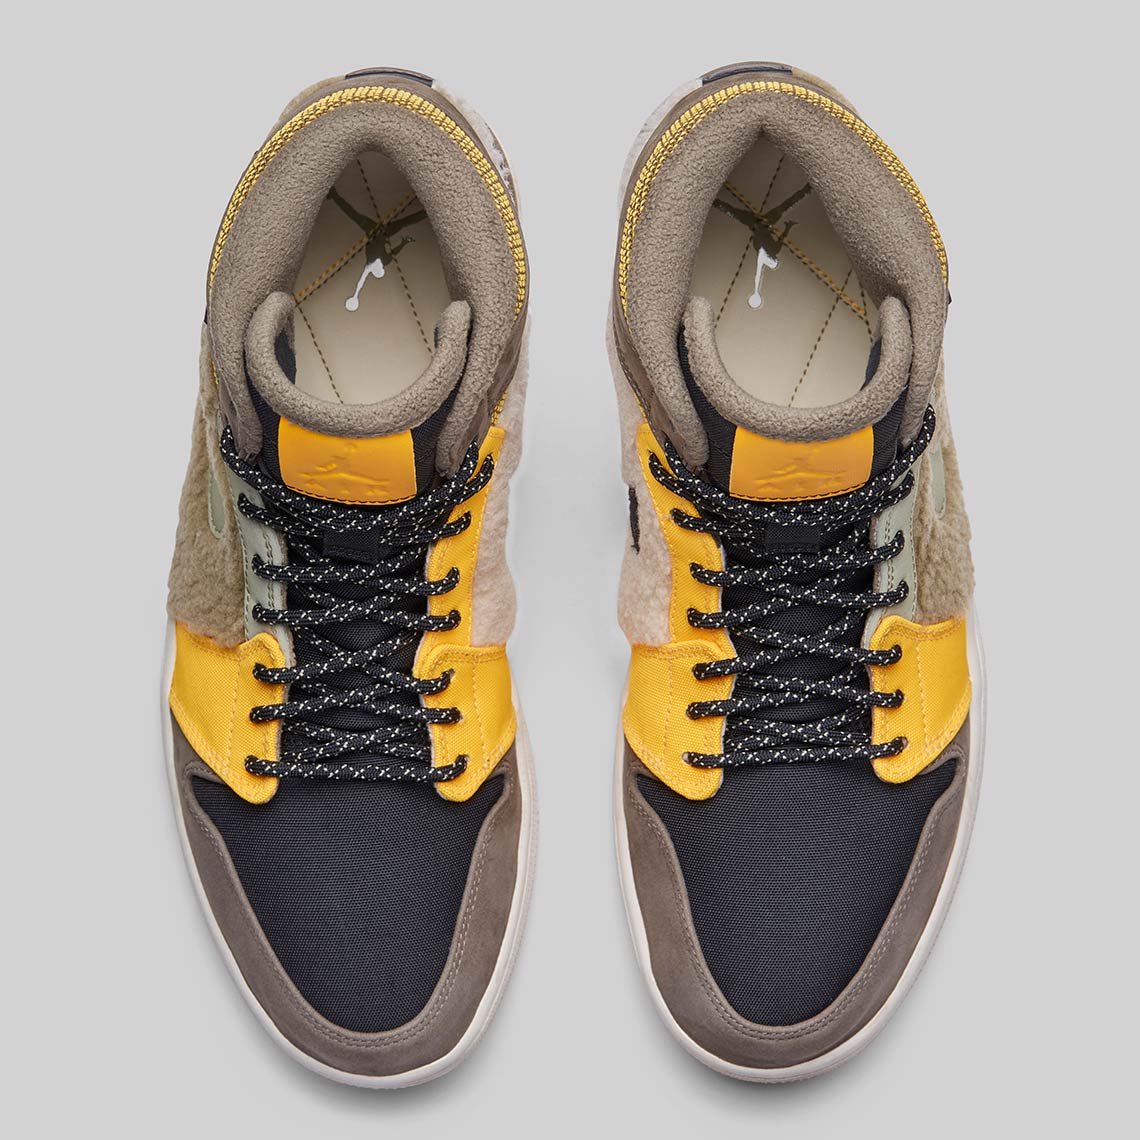 Low from Jordan are innovative slip-on basketball shoes Av3724 200 3